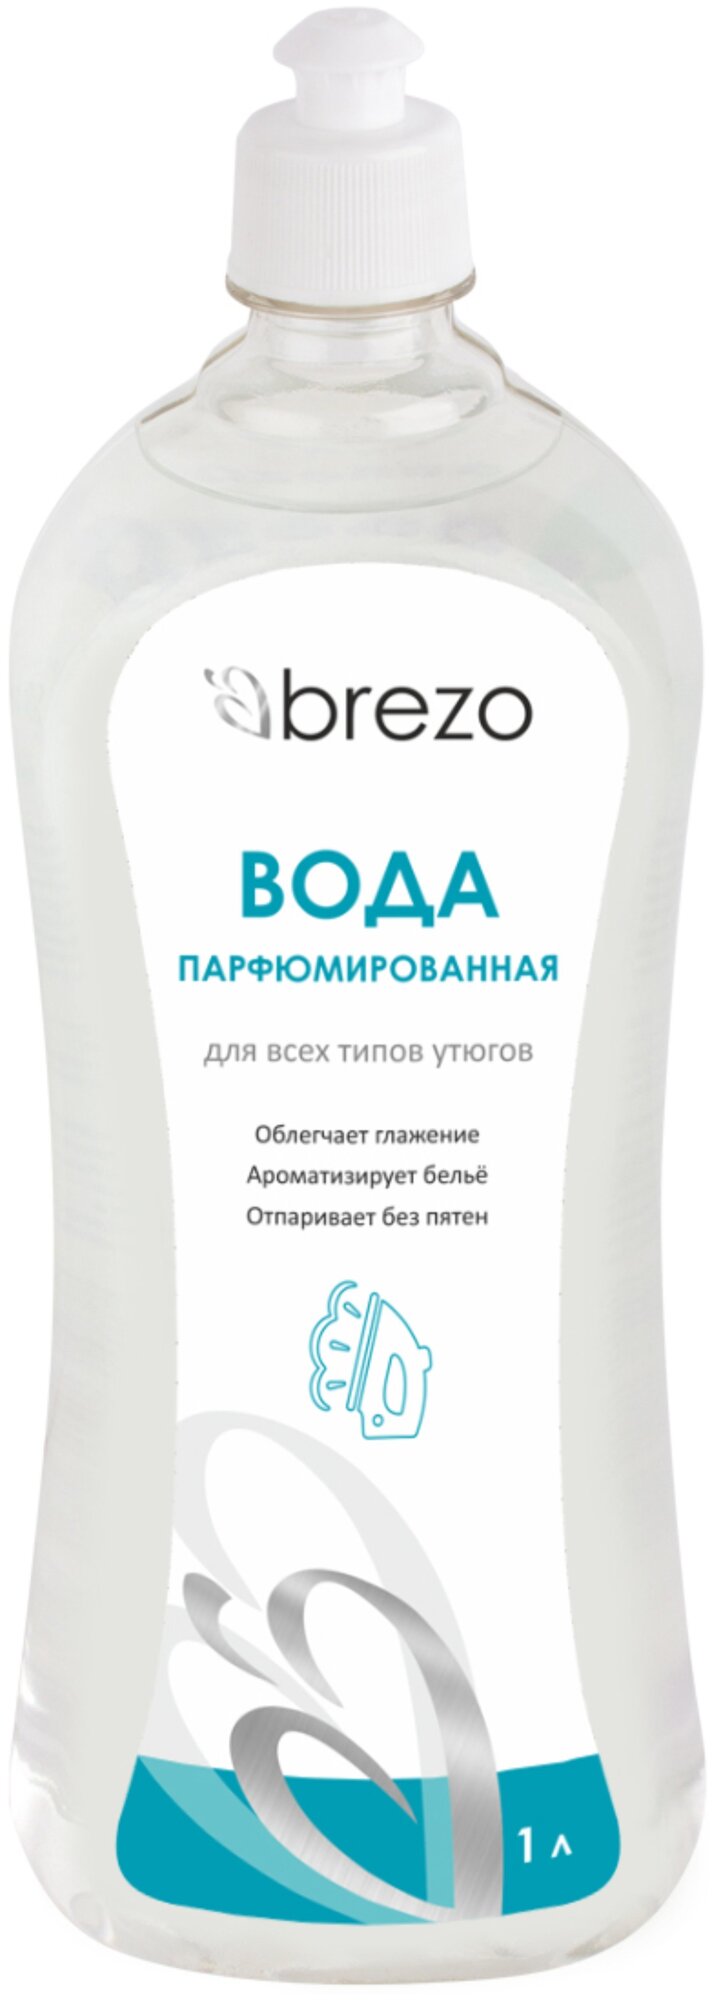 Вода парфюмированная BREZO для всех типов утюгов